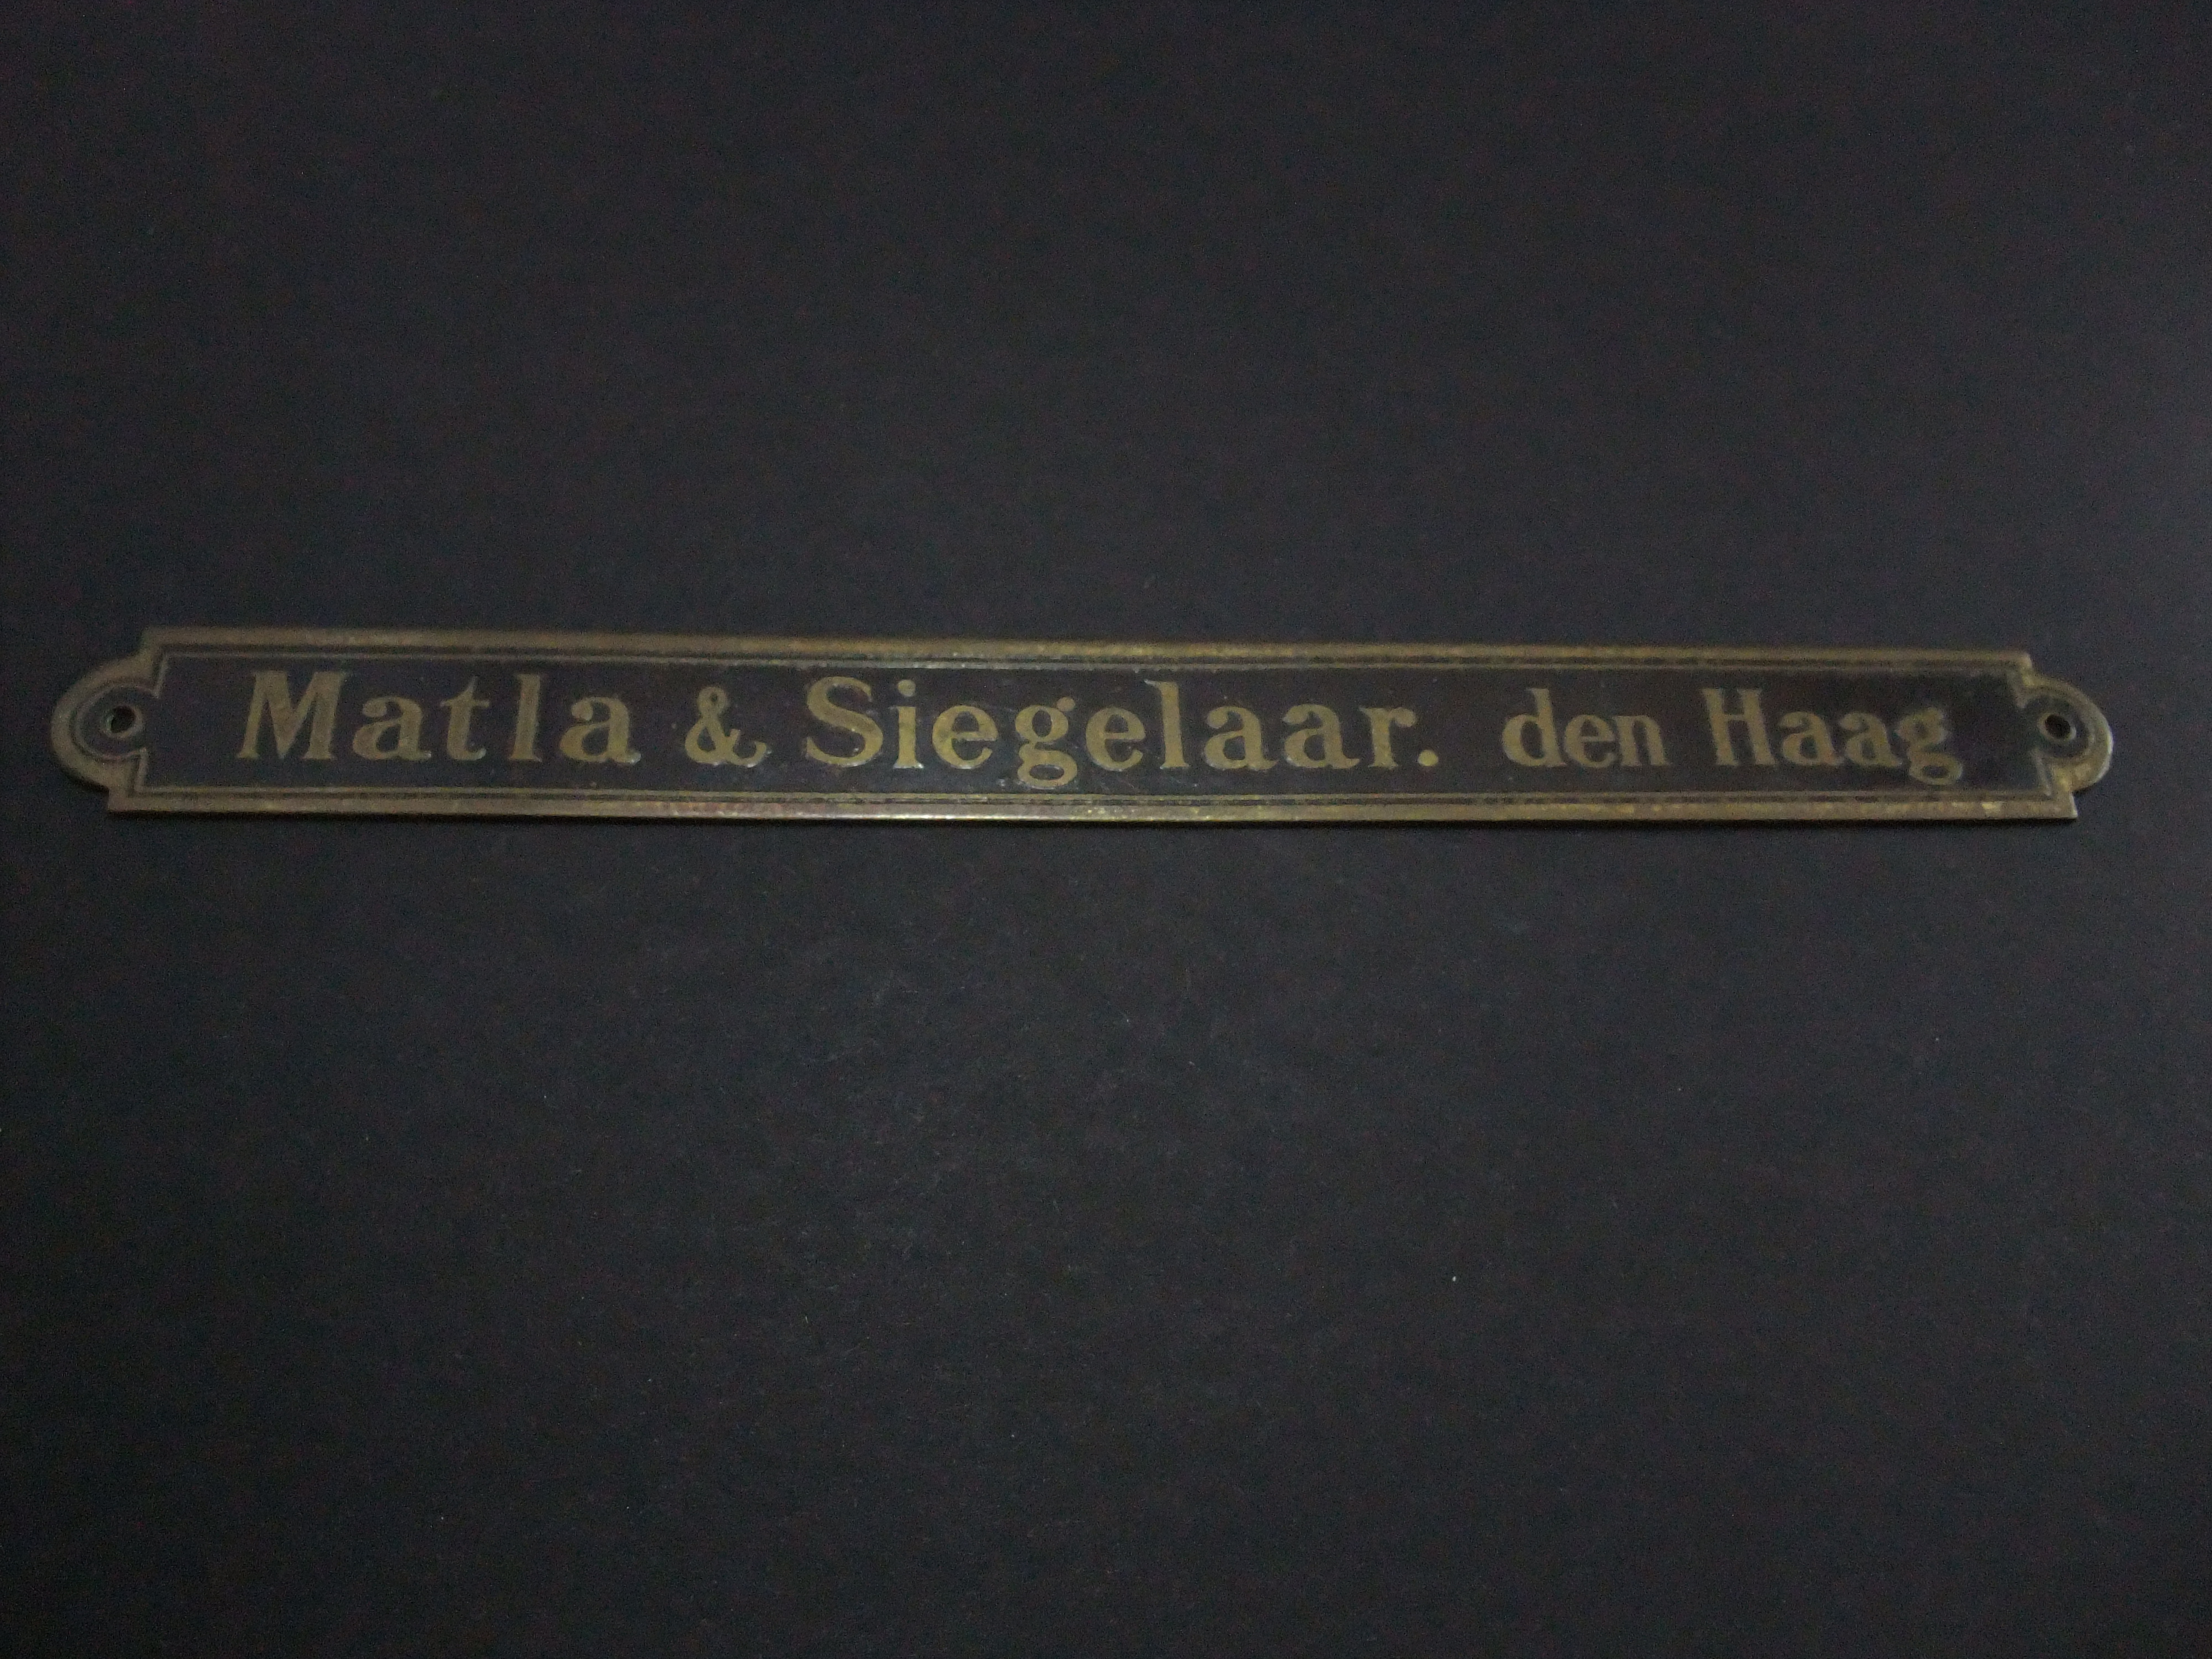 MATLA & SIEGELAAR, Piano- en Orgelhandel, Weimarstraat Den Haag